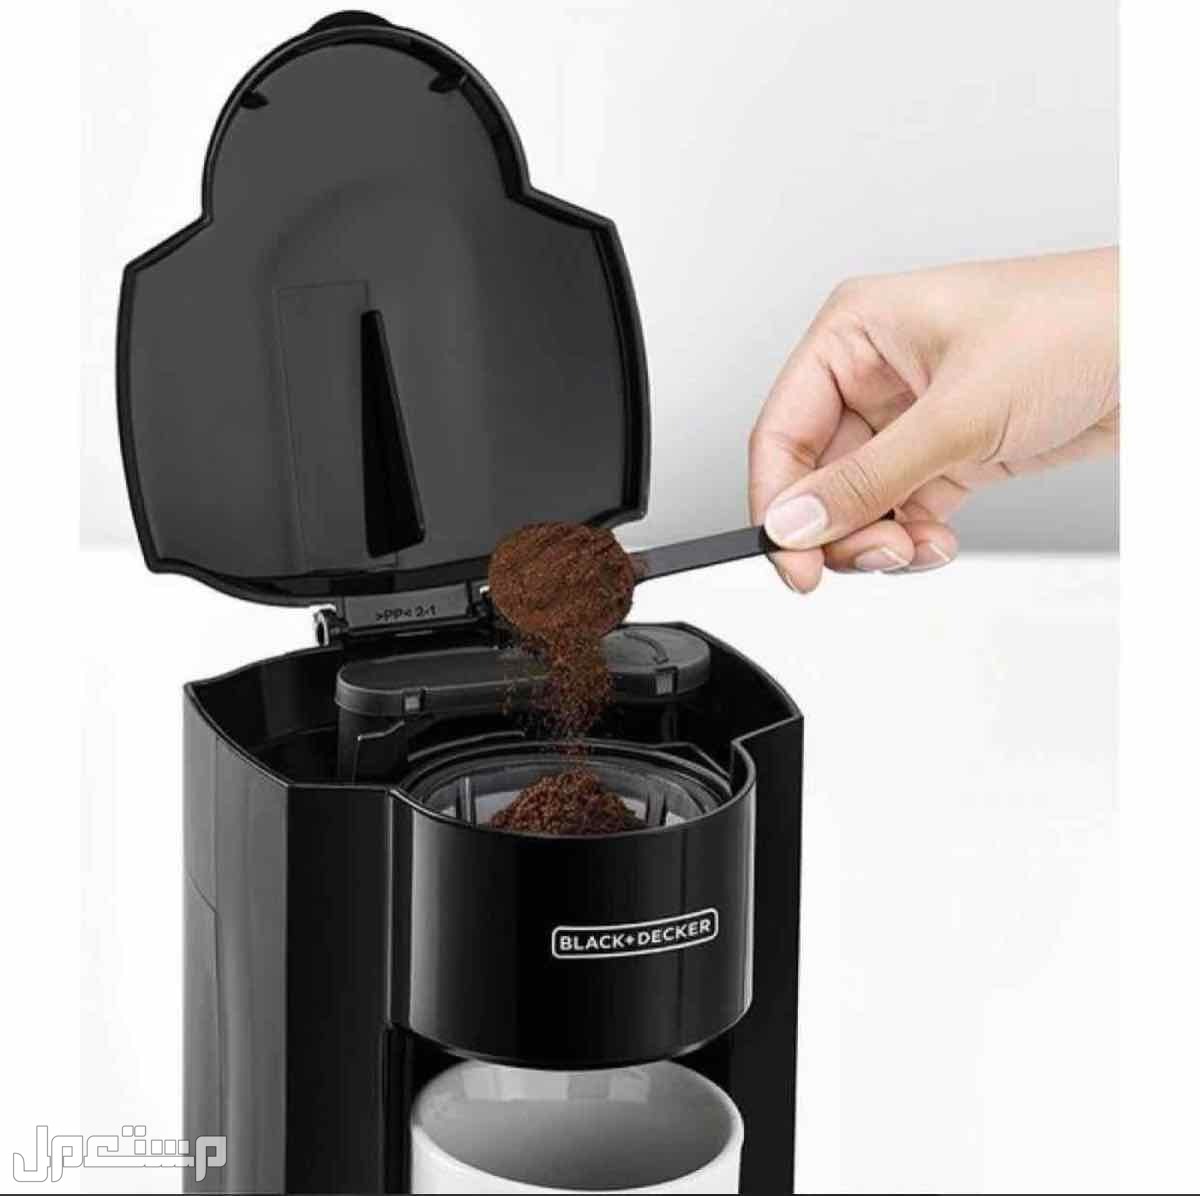 الة تحضير القهوة من بلاك اند ديكر، مع كوب للقهوة بالتنقيط ...